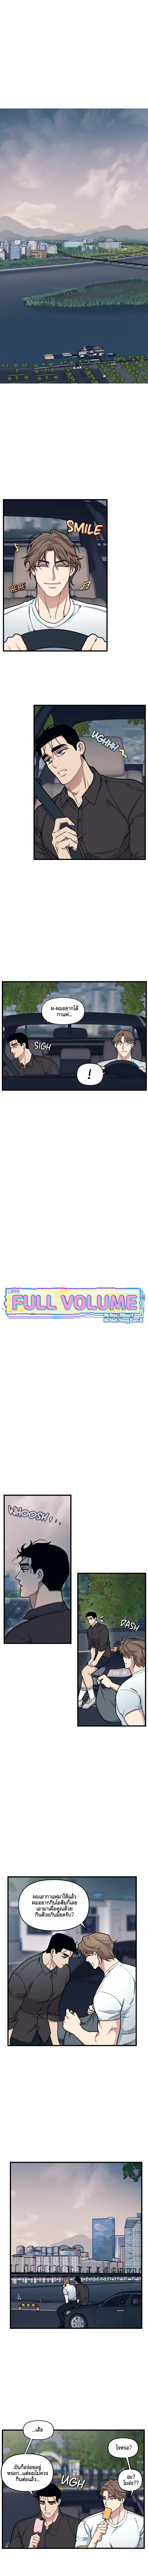 Full Volume 23 2